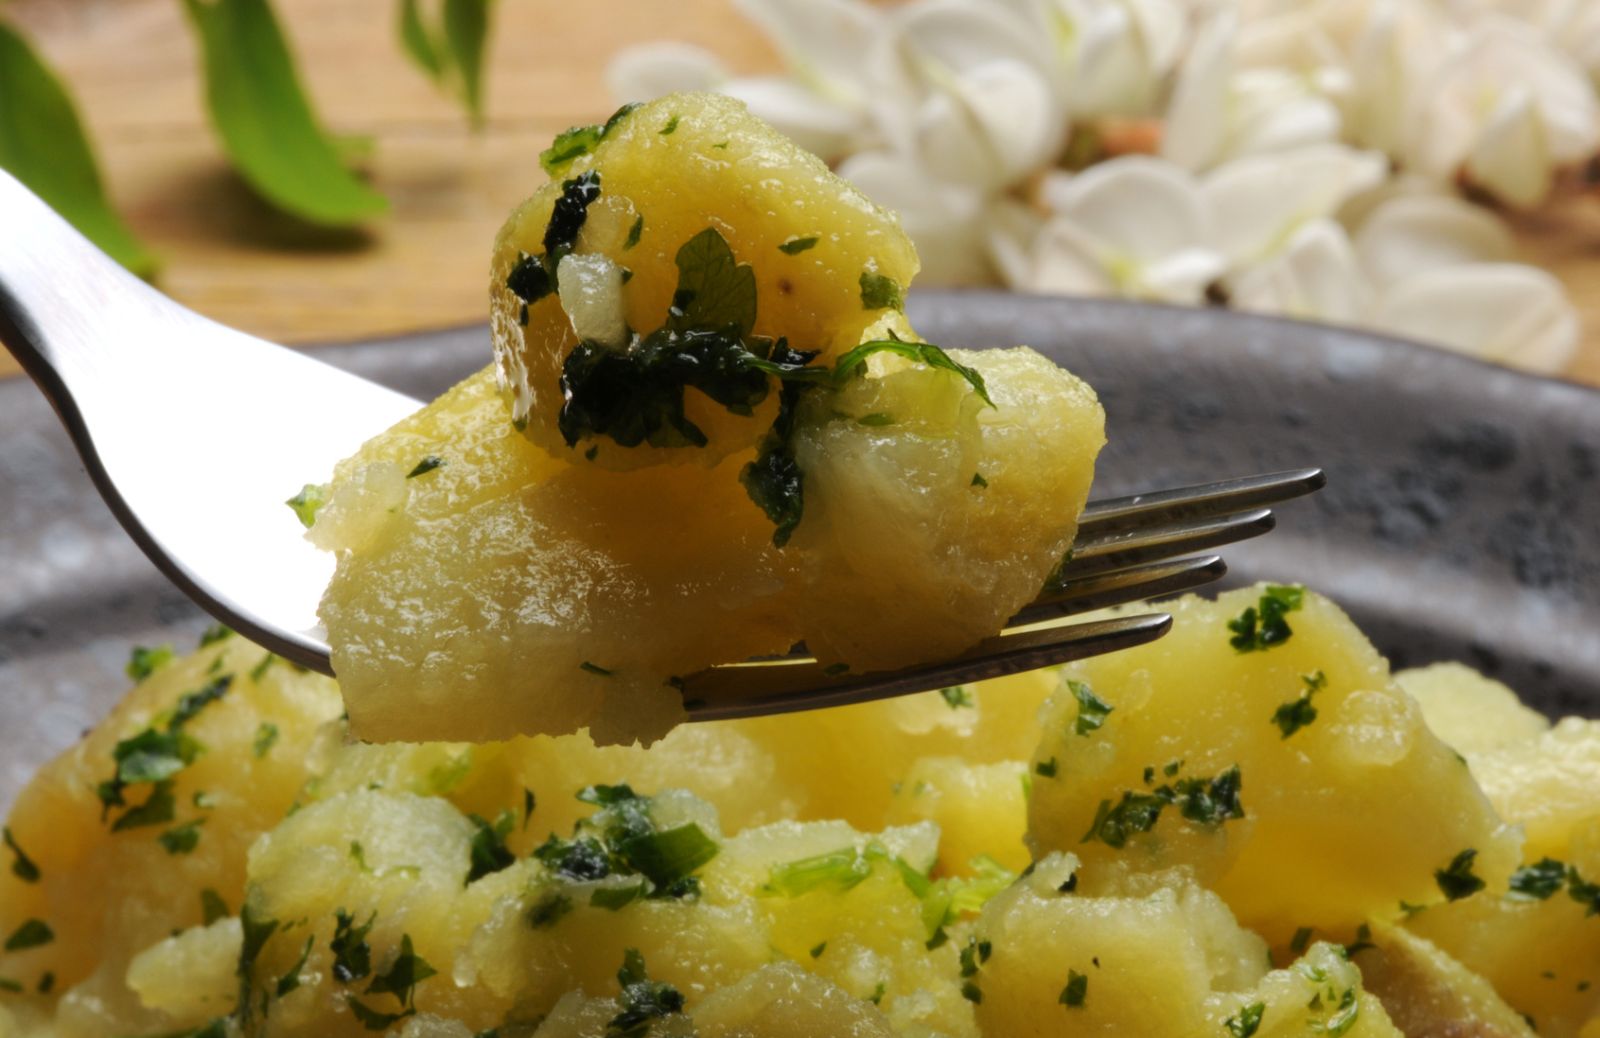 Come fare l'insalata di patate alle erbe aromatiche con spremuta di agrumi